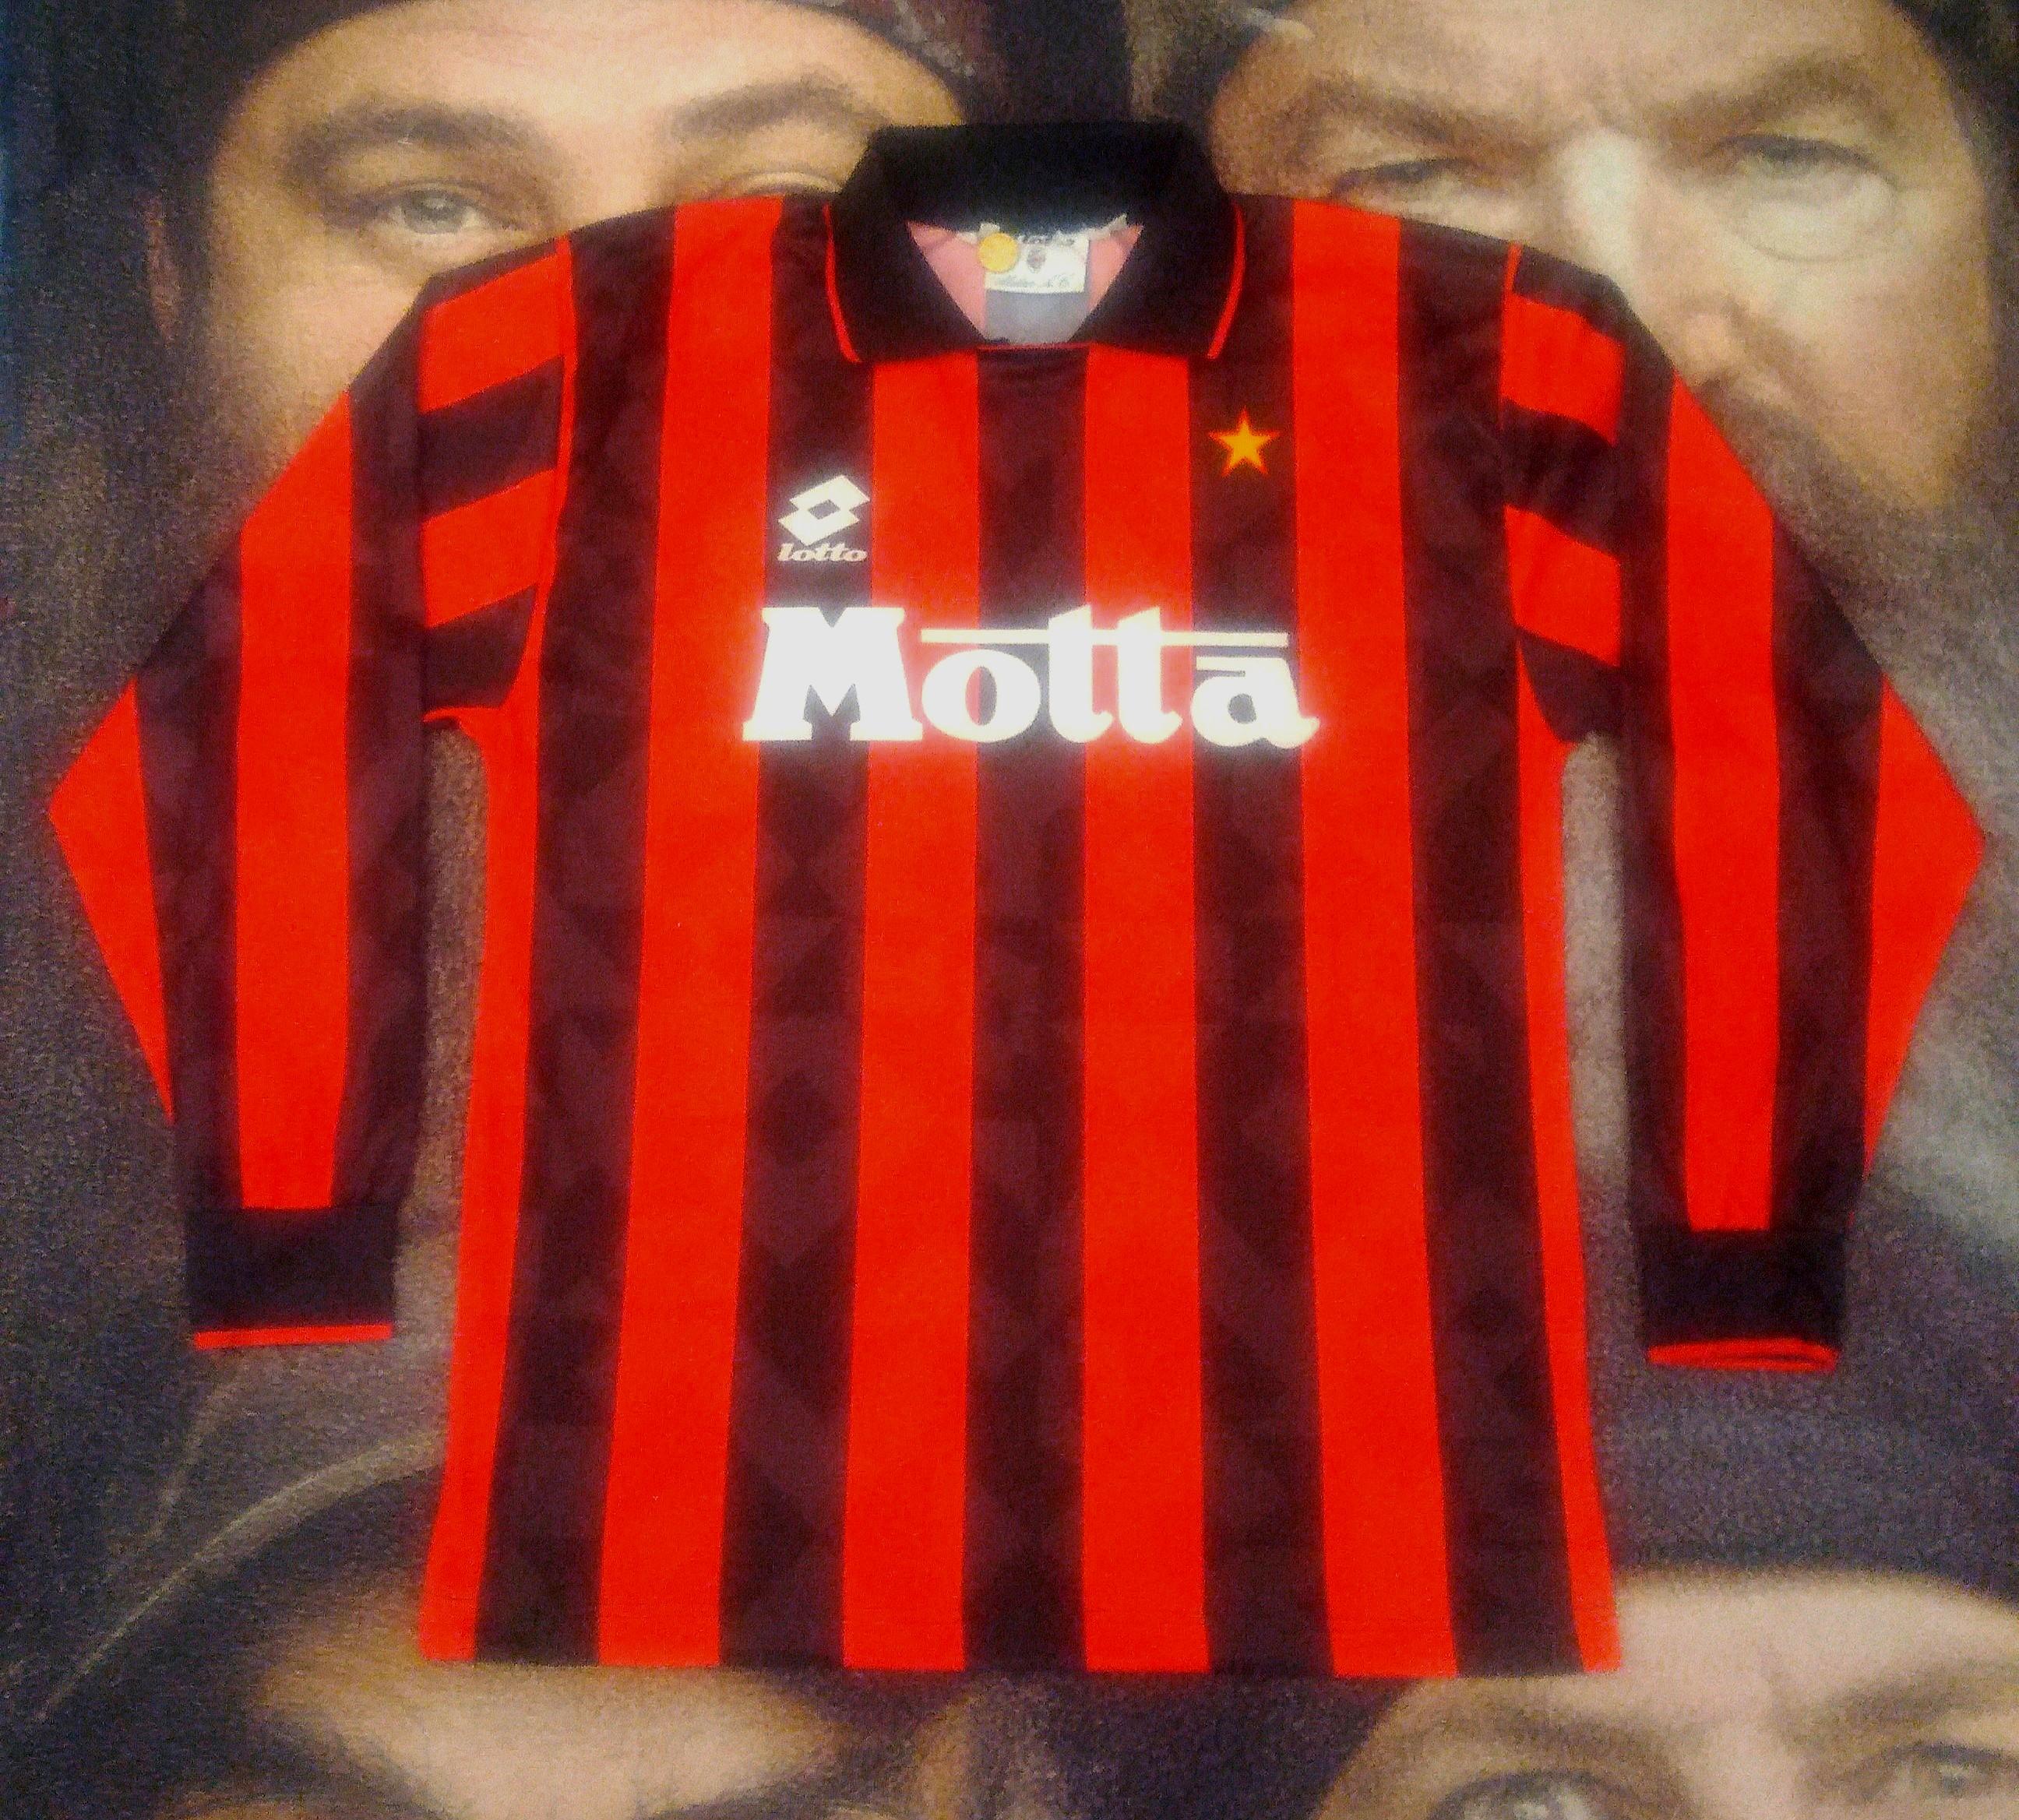 ac milan 93/94 shirt